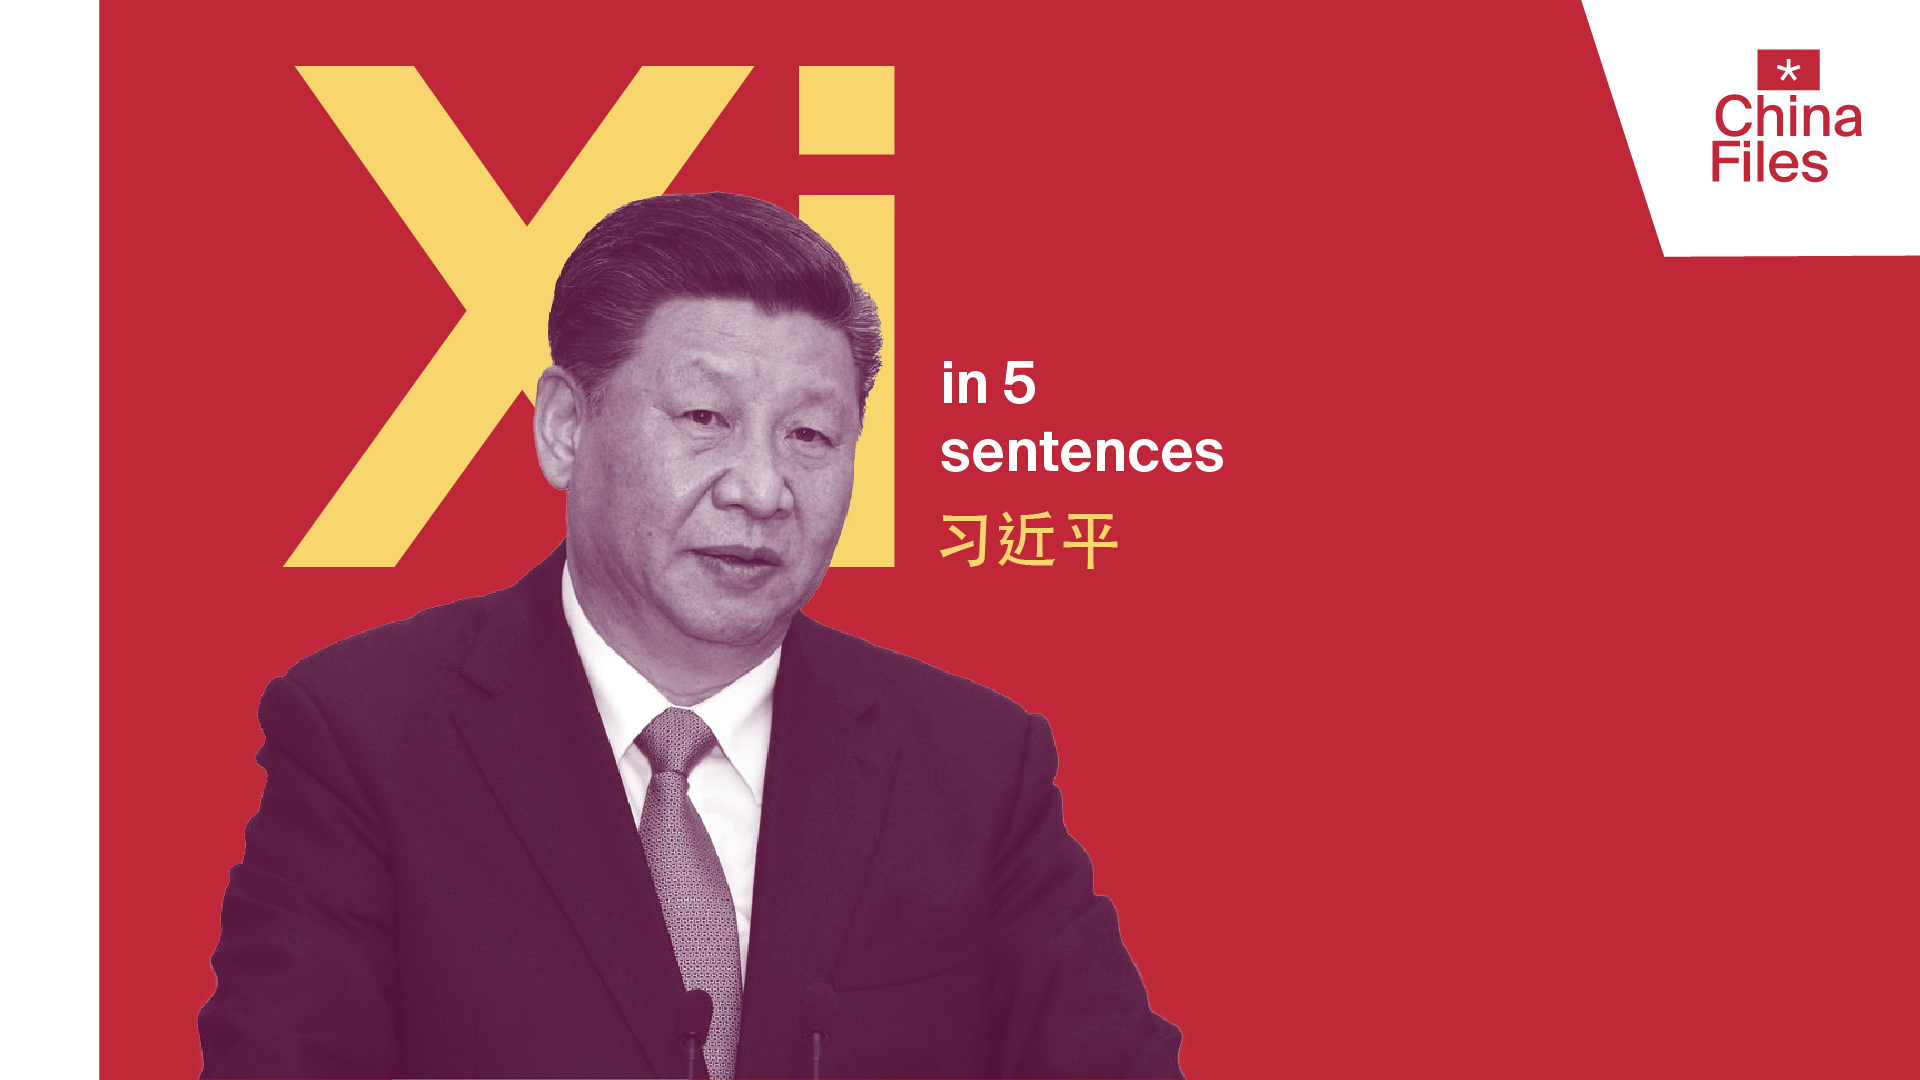 Xi Jinping in 5 sentences China Files